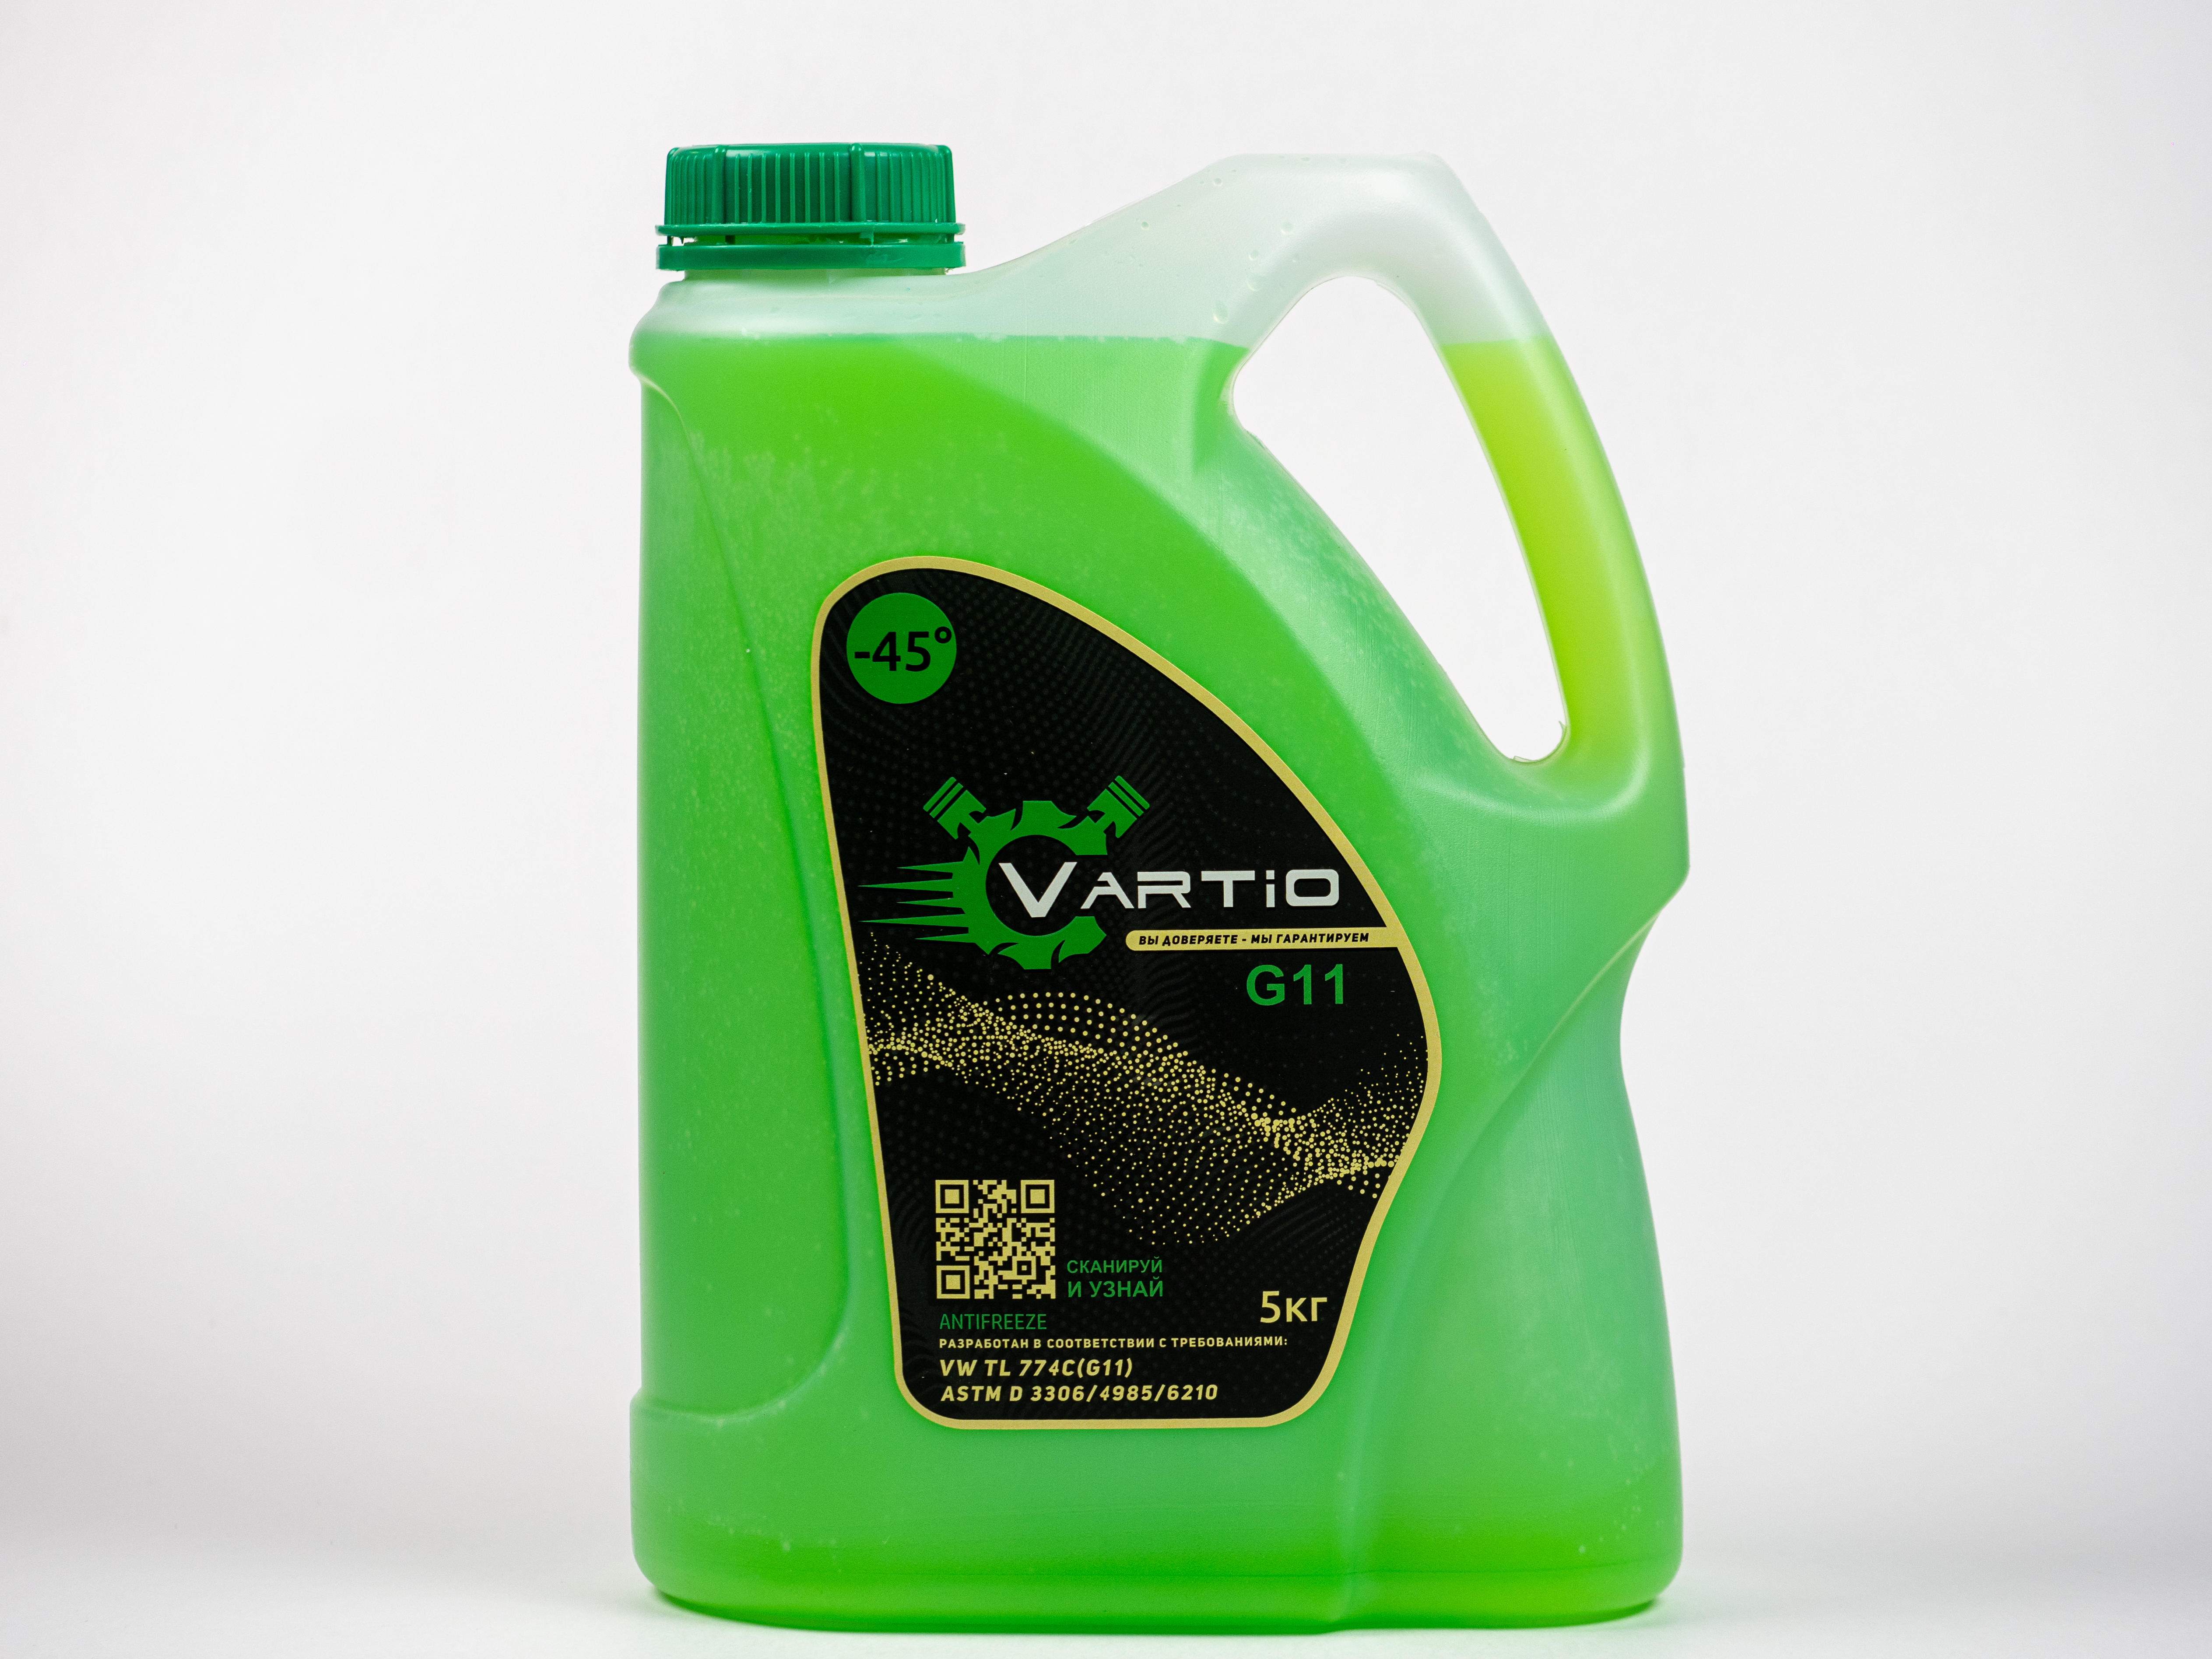 Антифриз Vartio G11 (-45) зеленый 5 кг